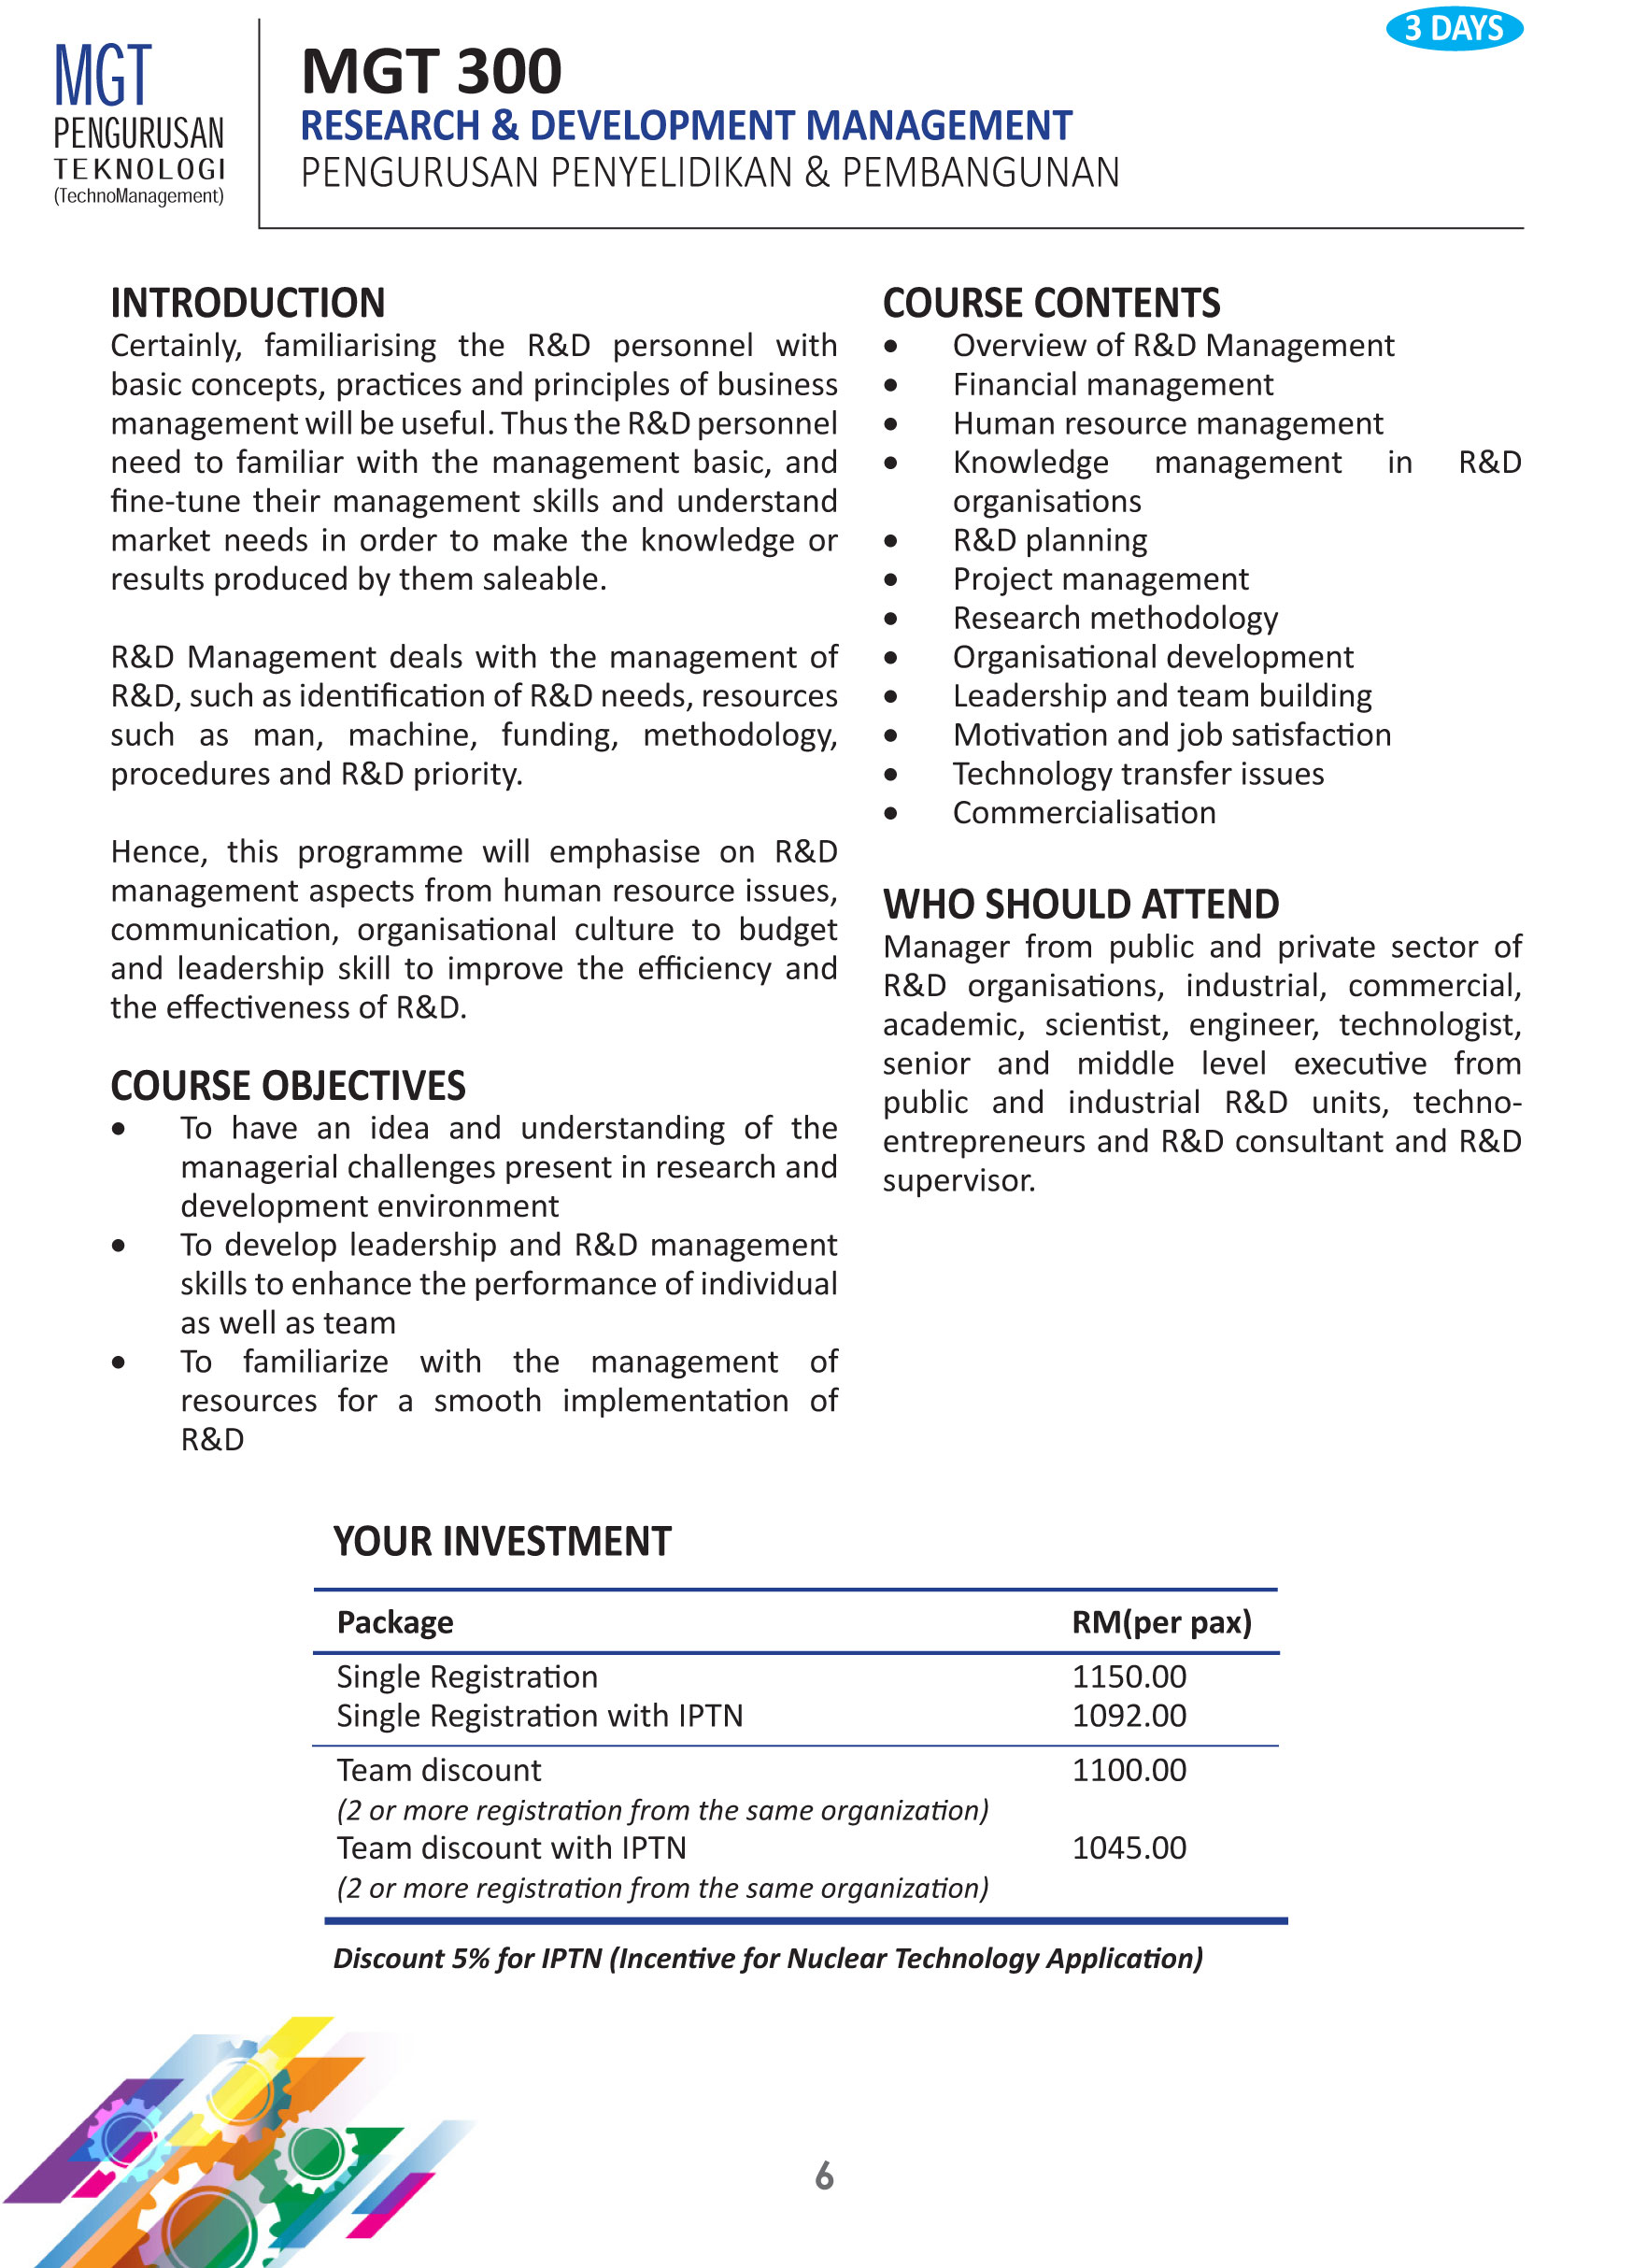 MGT 300: Research & Development Management